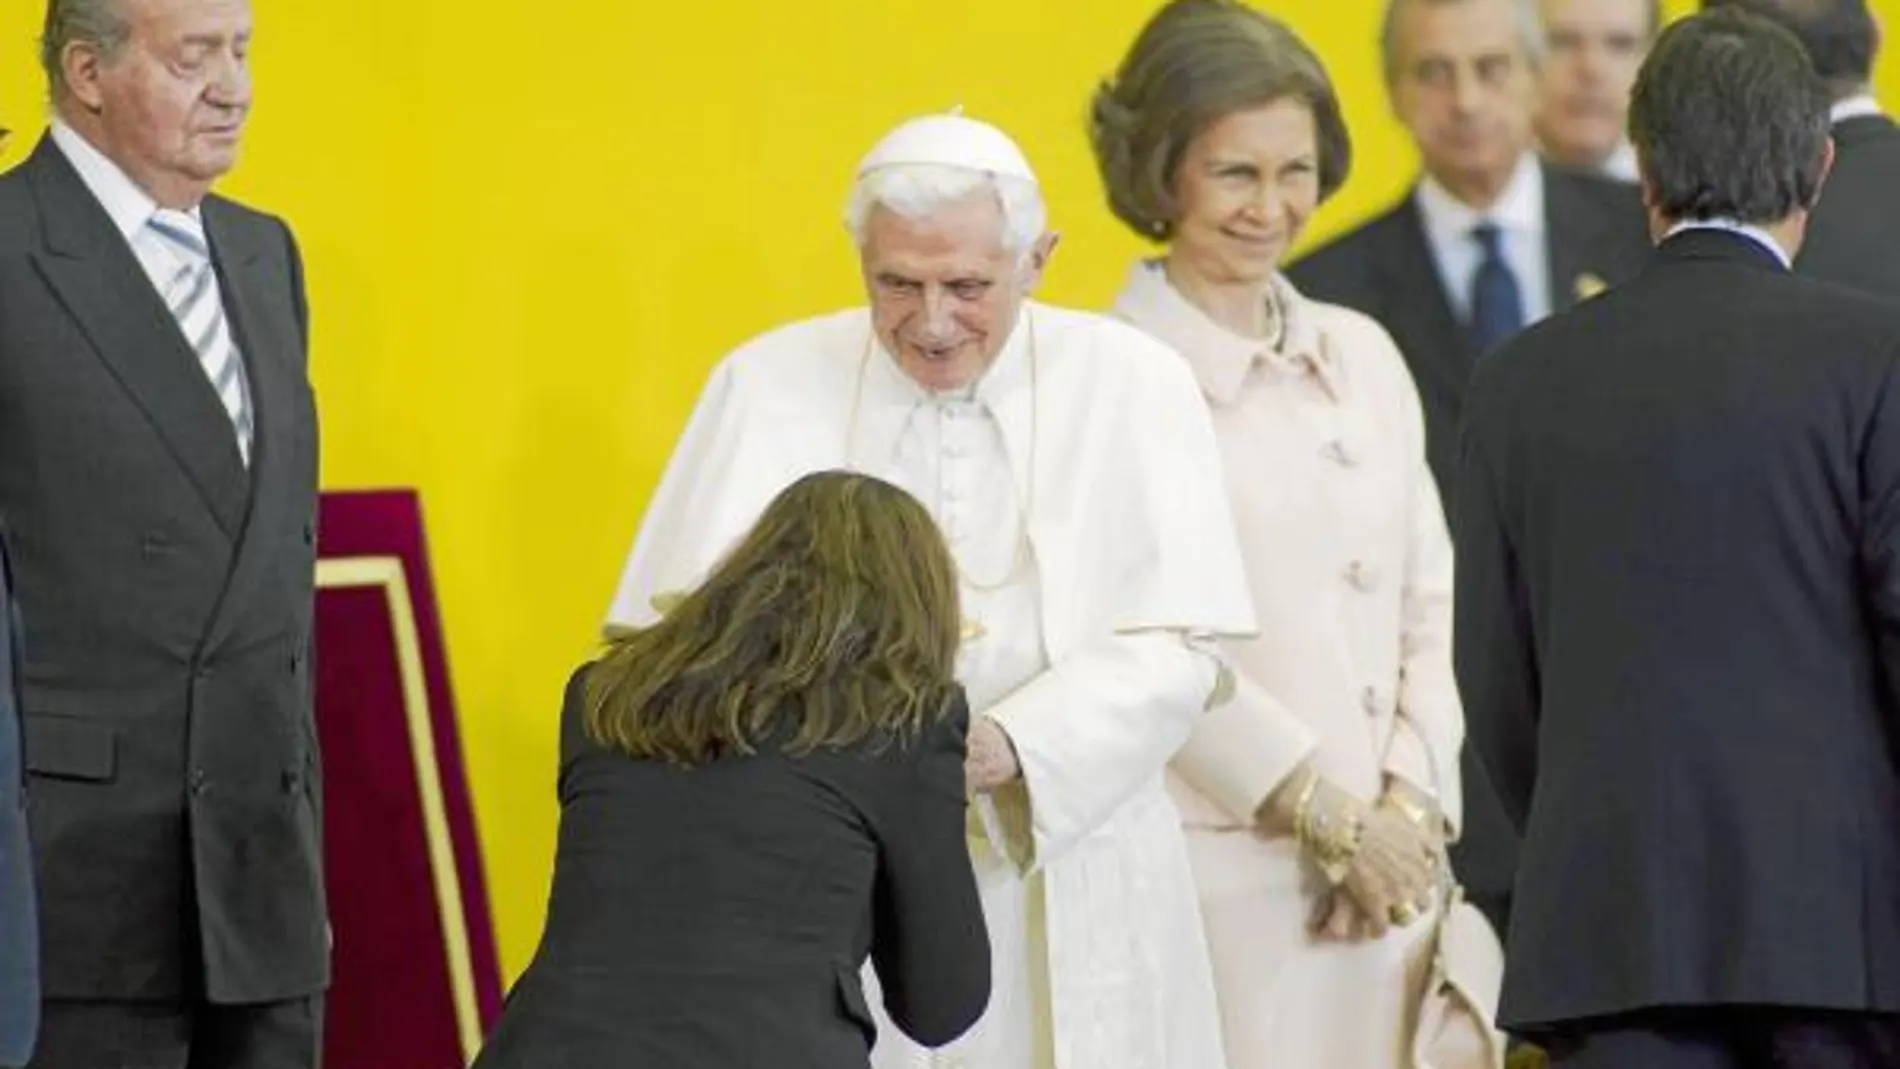 La presidenta del PP catalán, Alicia Sánchez-Camacho, saludó al Santo Padre en la ceremonia de despedida en el aeropuerto barcelonés de El Prat ante la presencia de los Reyes